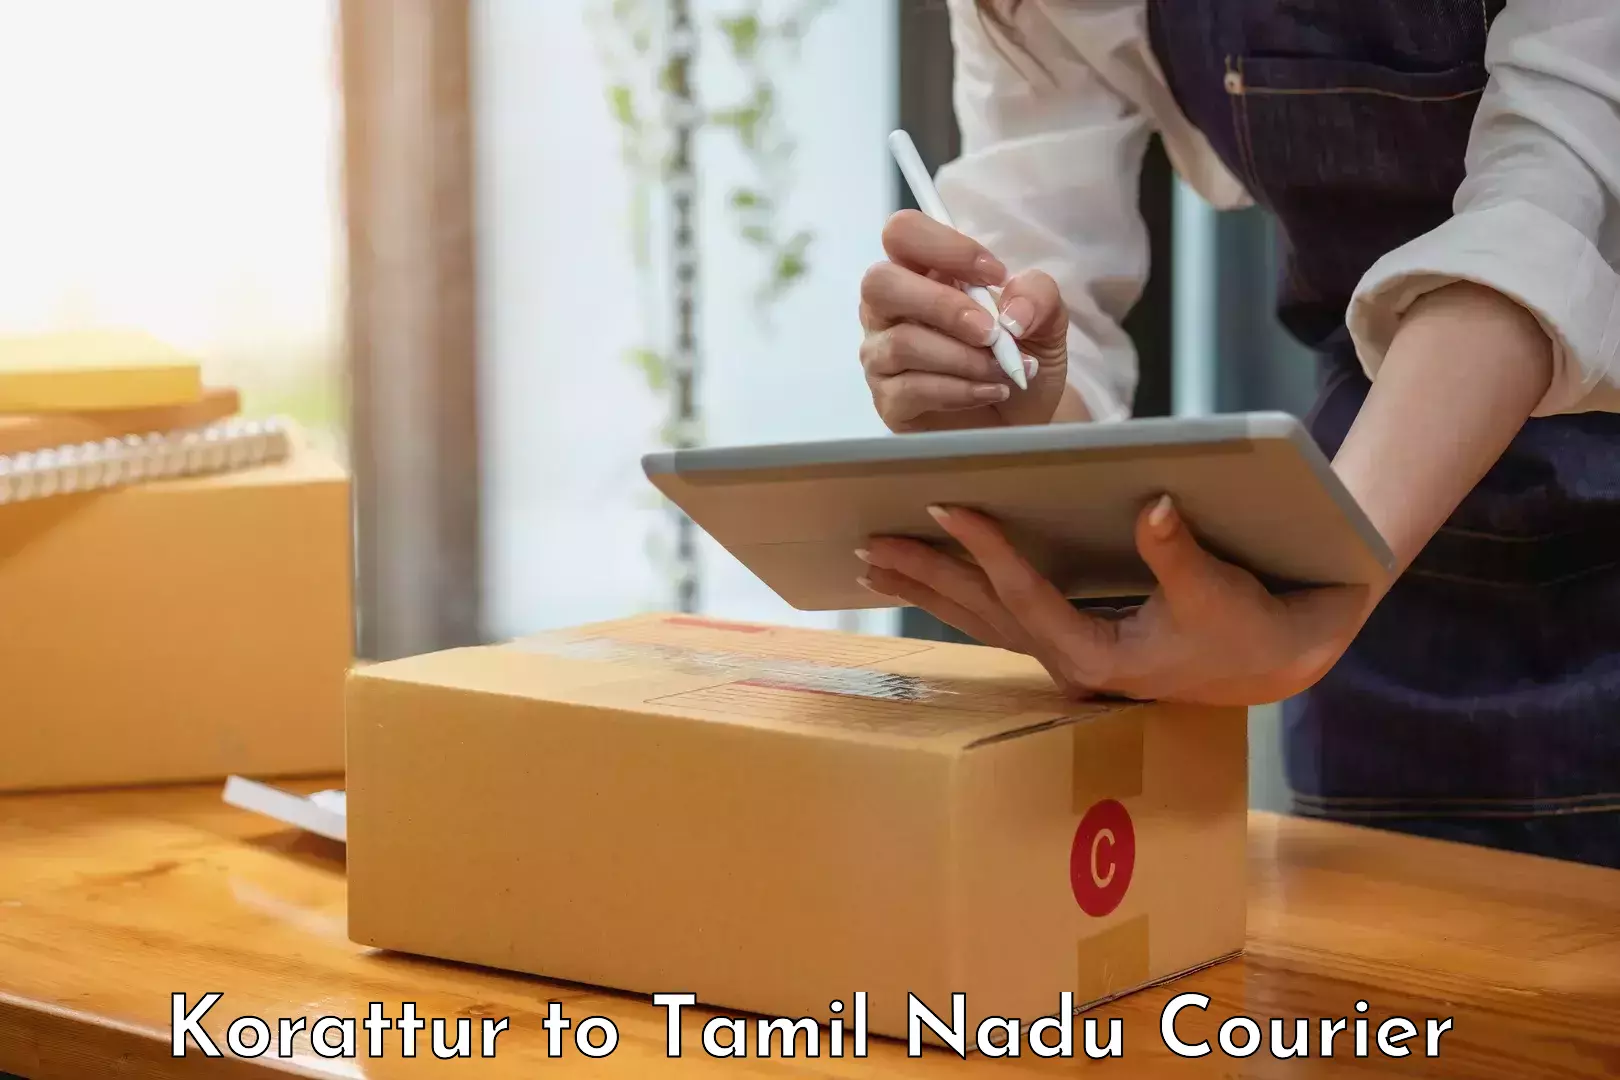 Weekend courier service Korattur to Tamil Nadu